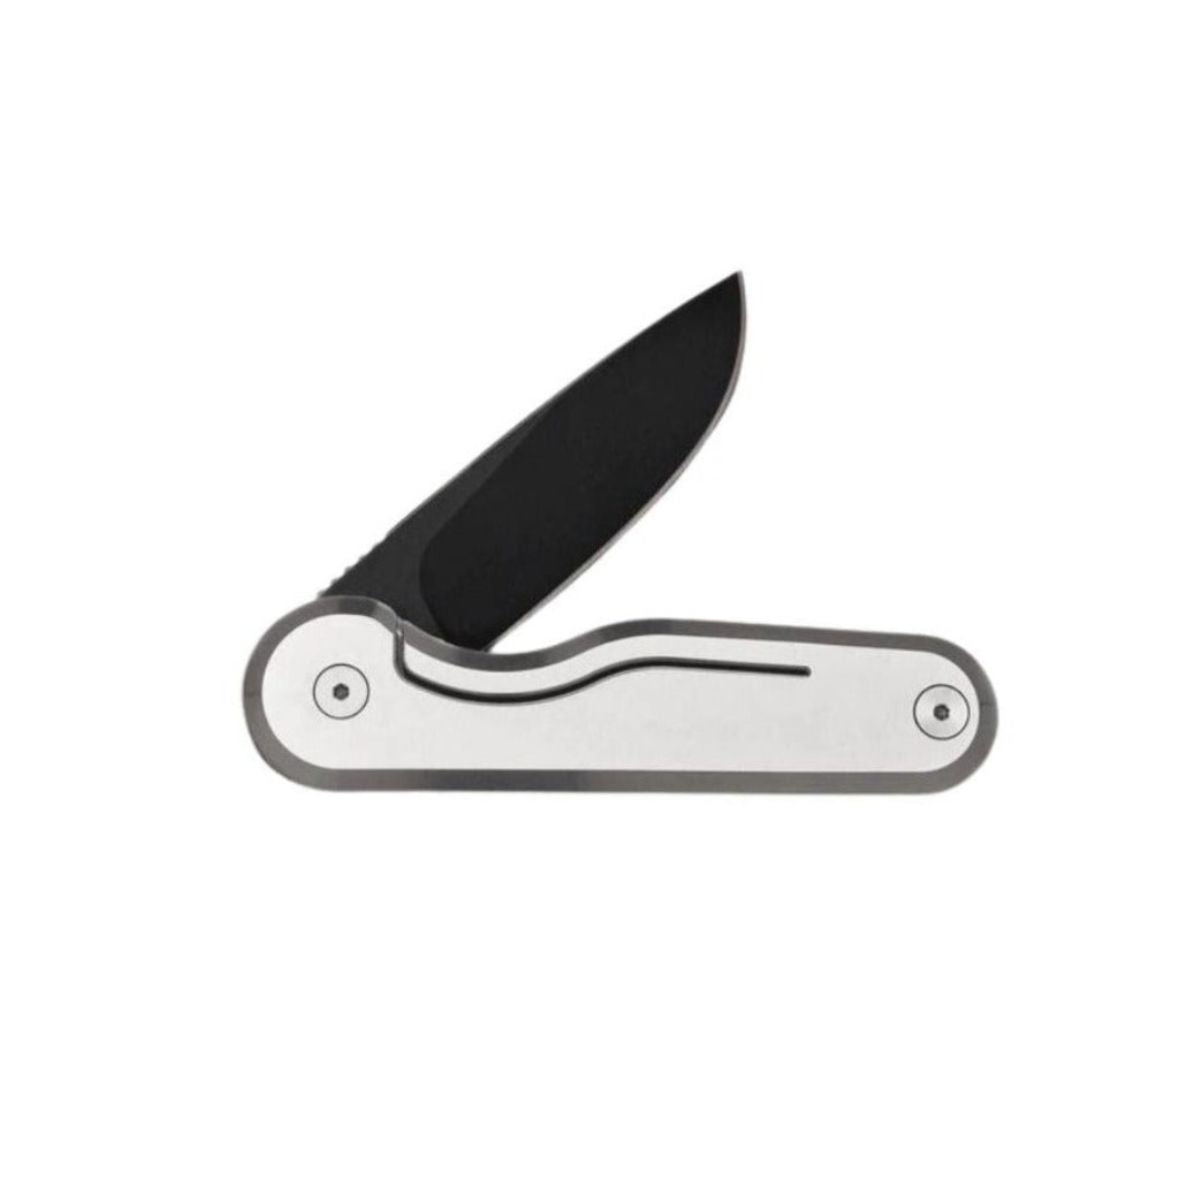 Rook Knife, Tricolor-Bespoke Designs